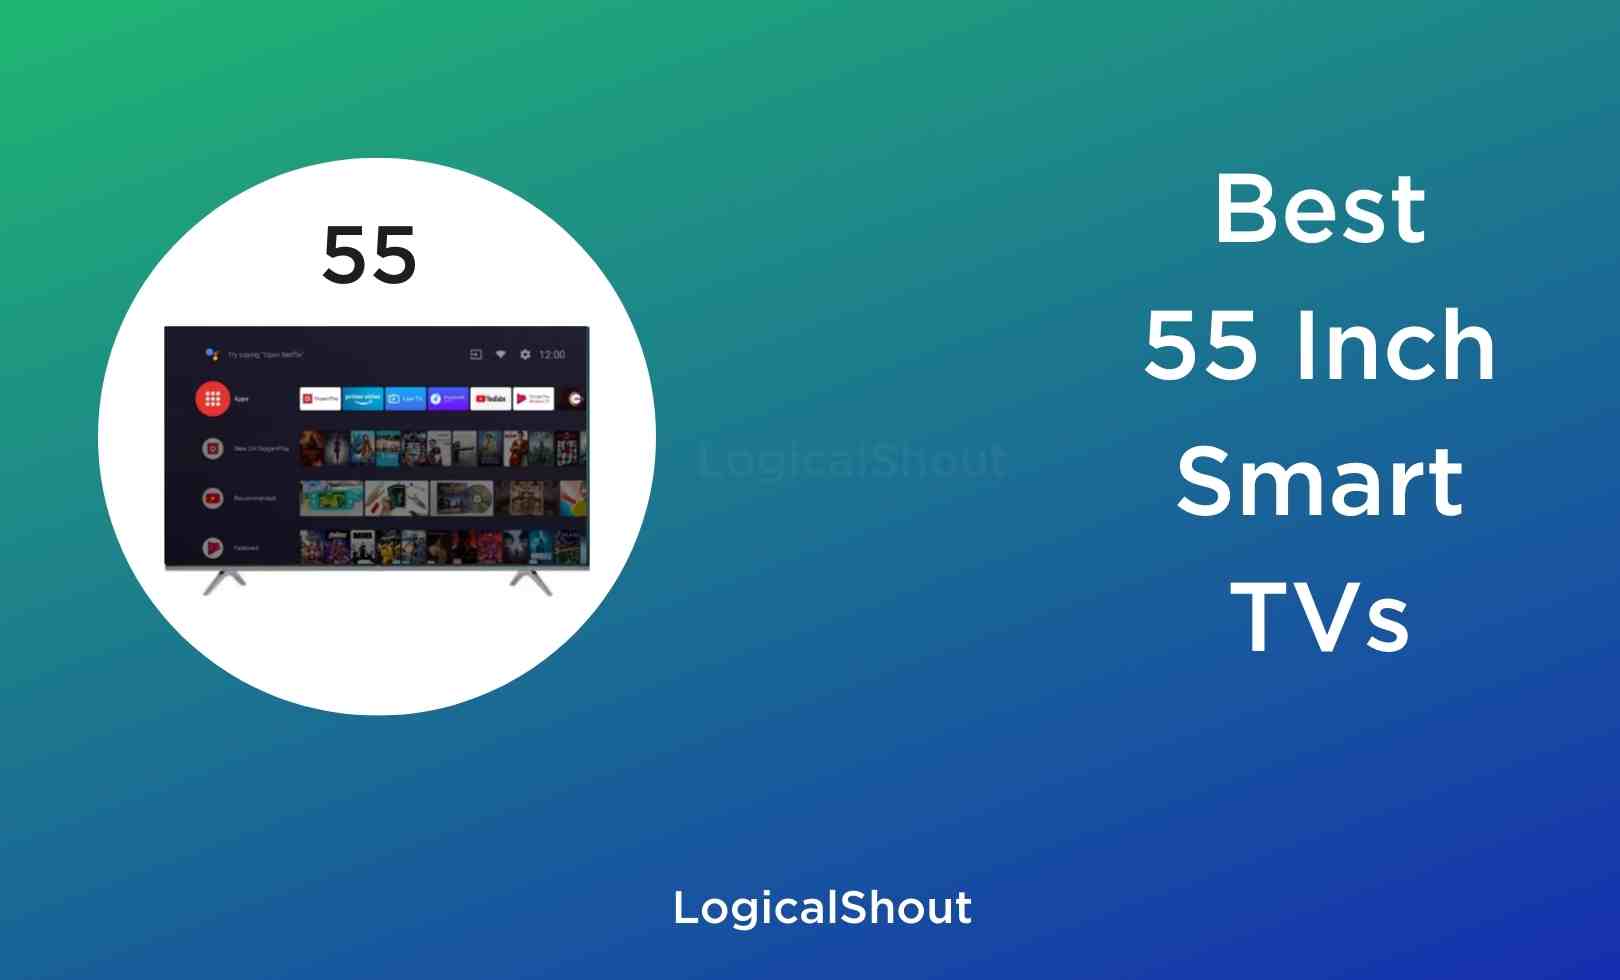 Best 55 inch Smart TVs